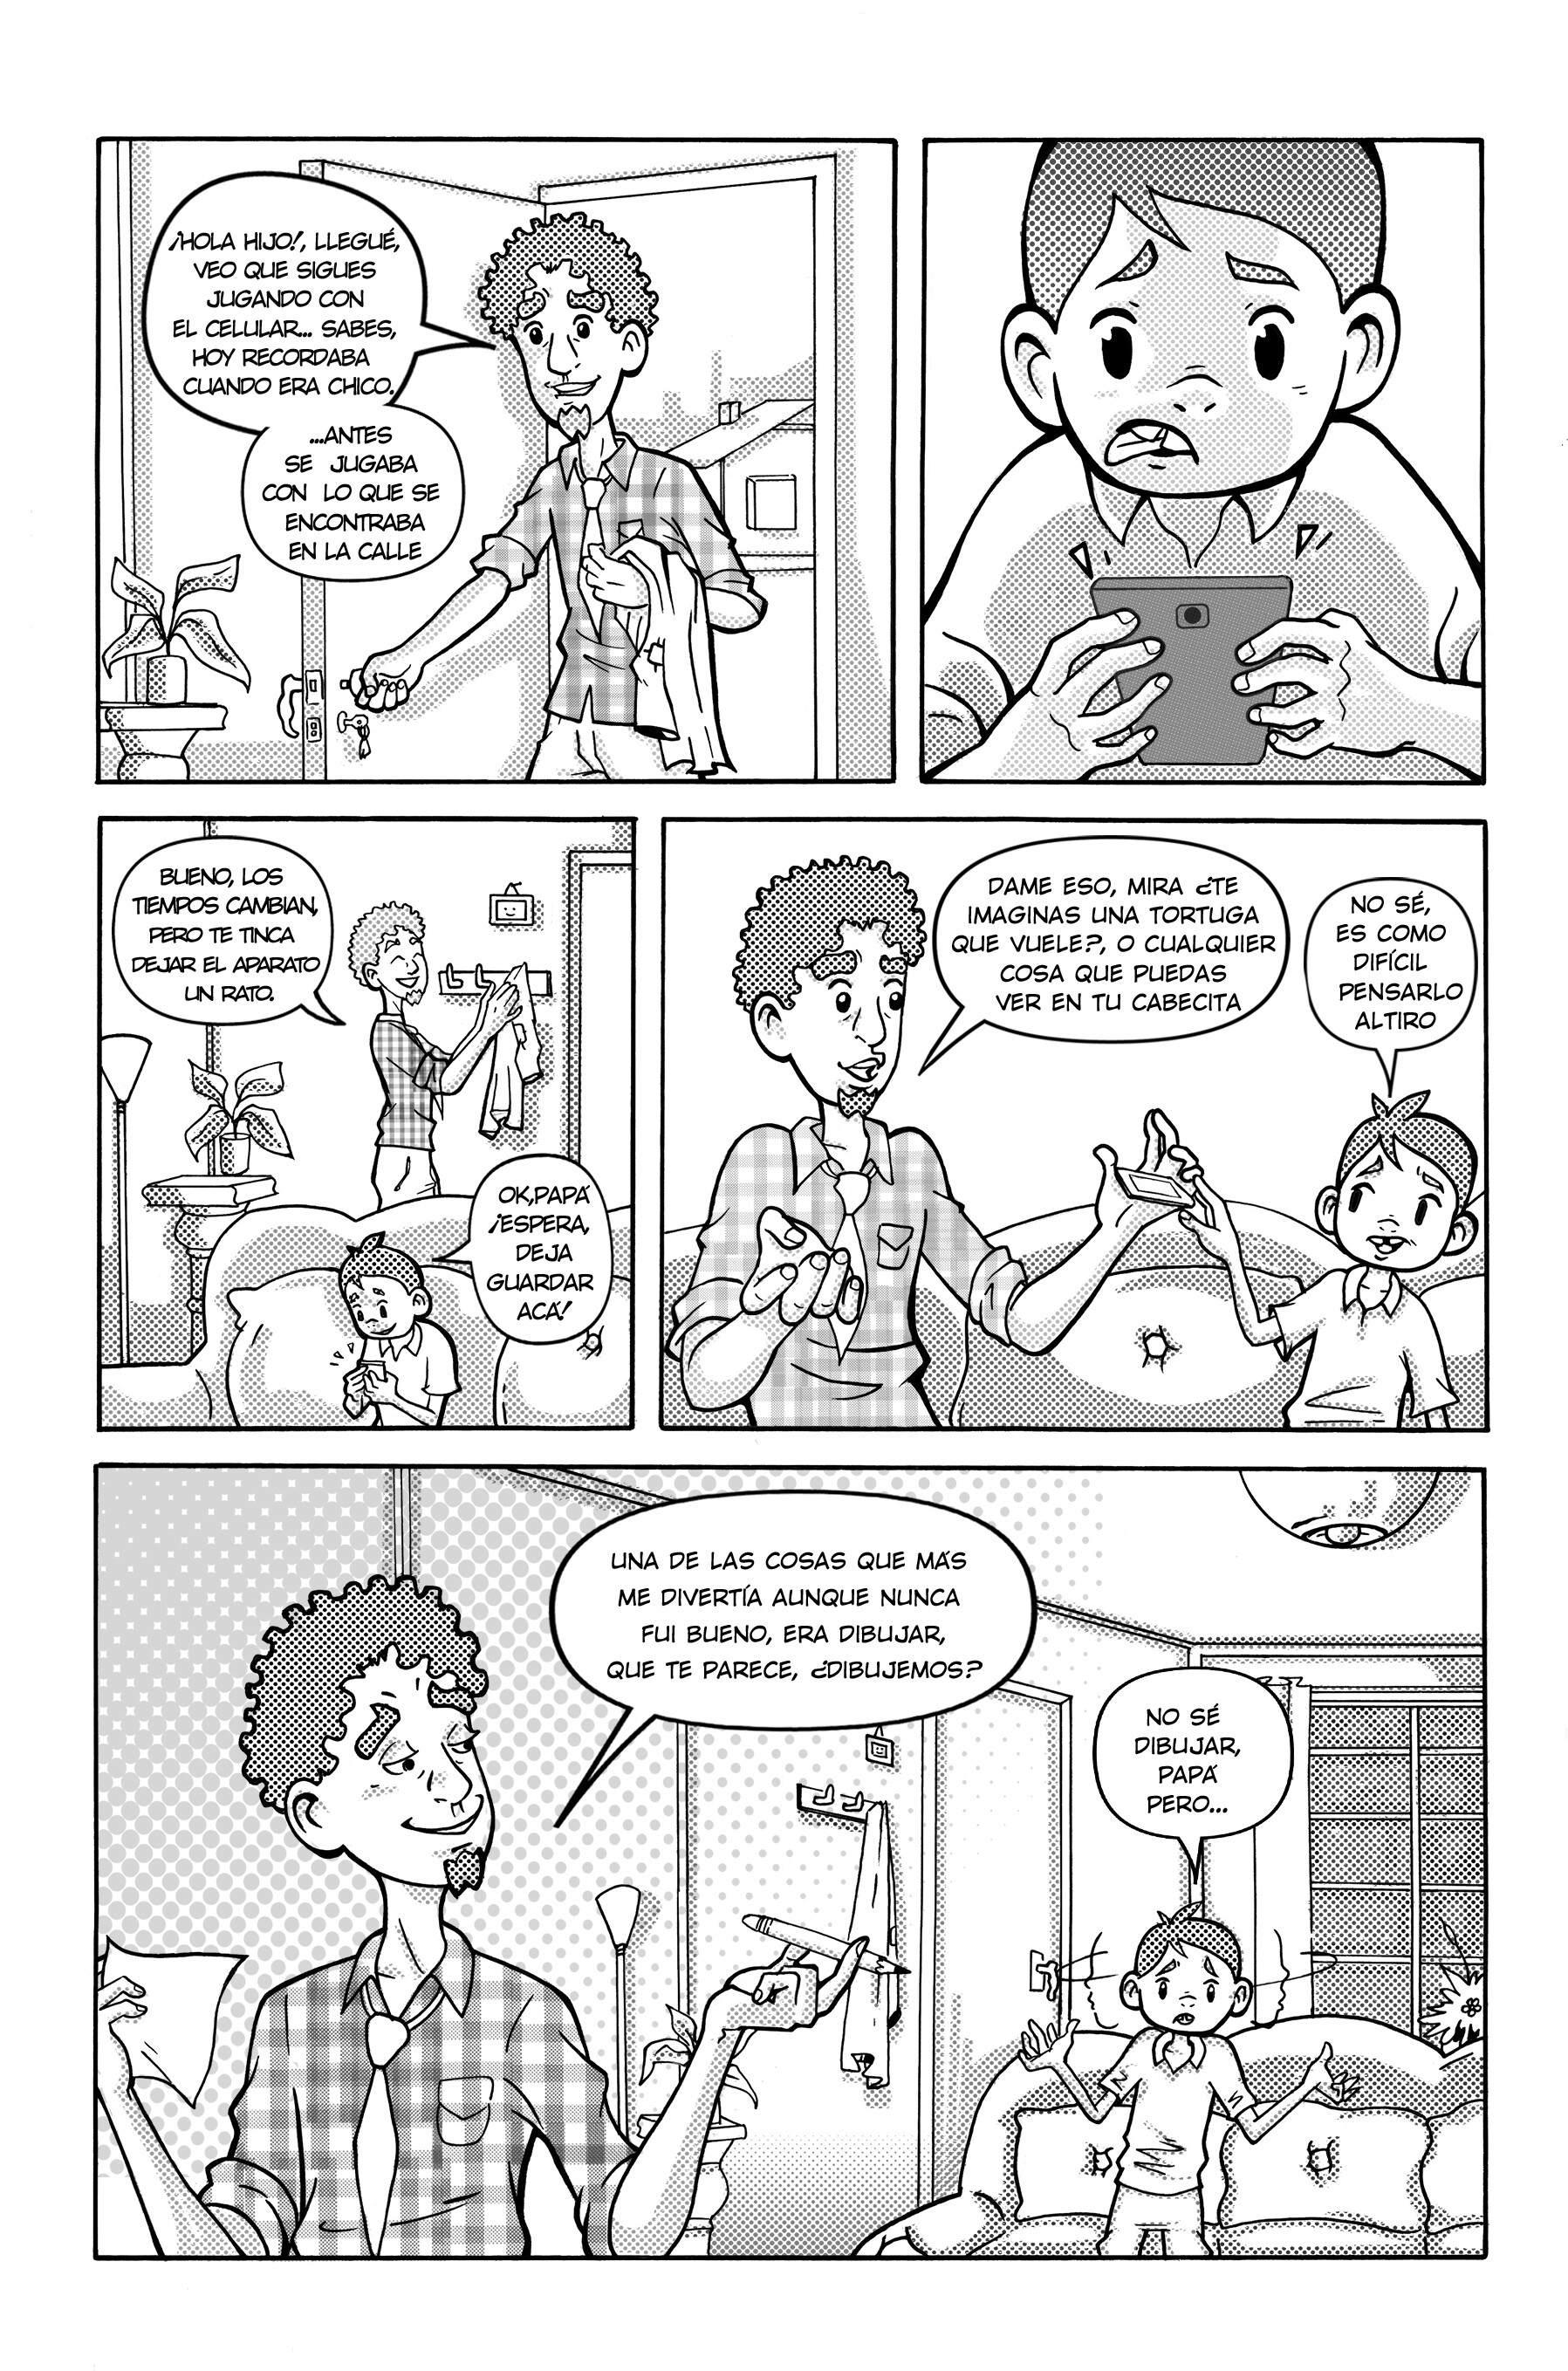 ArtStation - 2 cómic publicado historia corta- infantil.